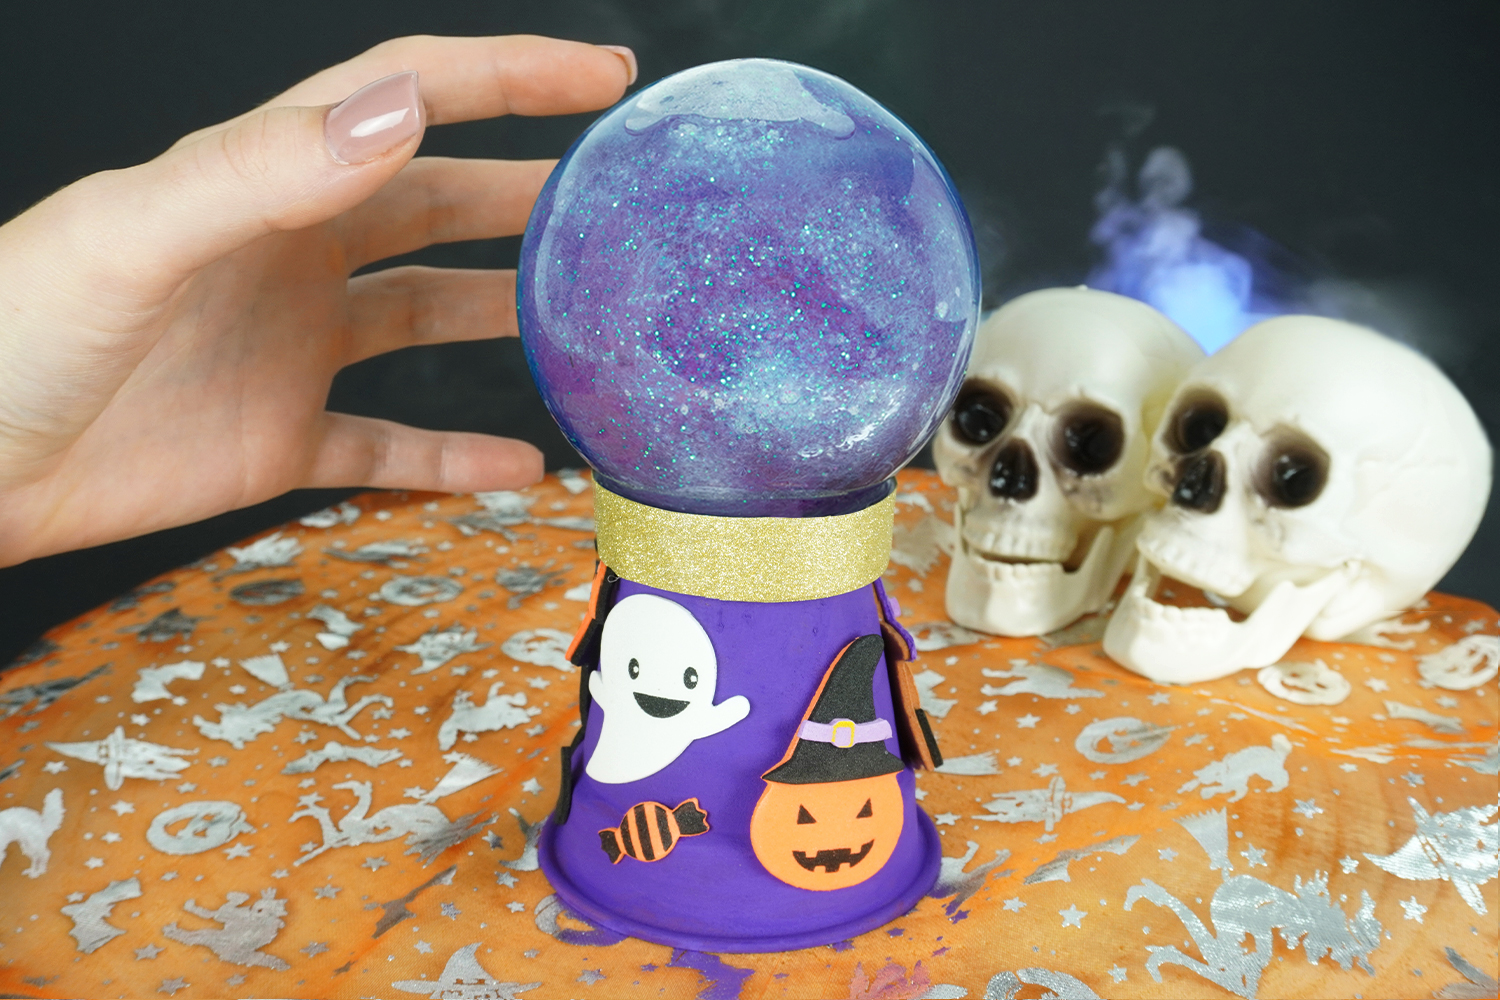 Coloriage Halloween avec modèle : Sorcière et sa boule de cristal